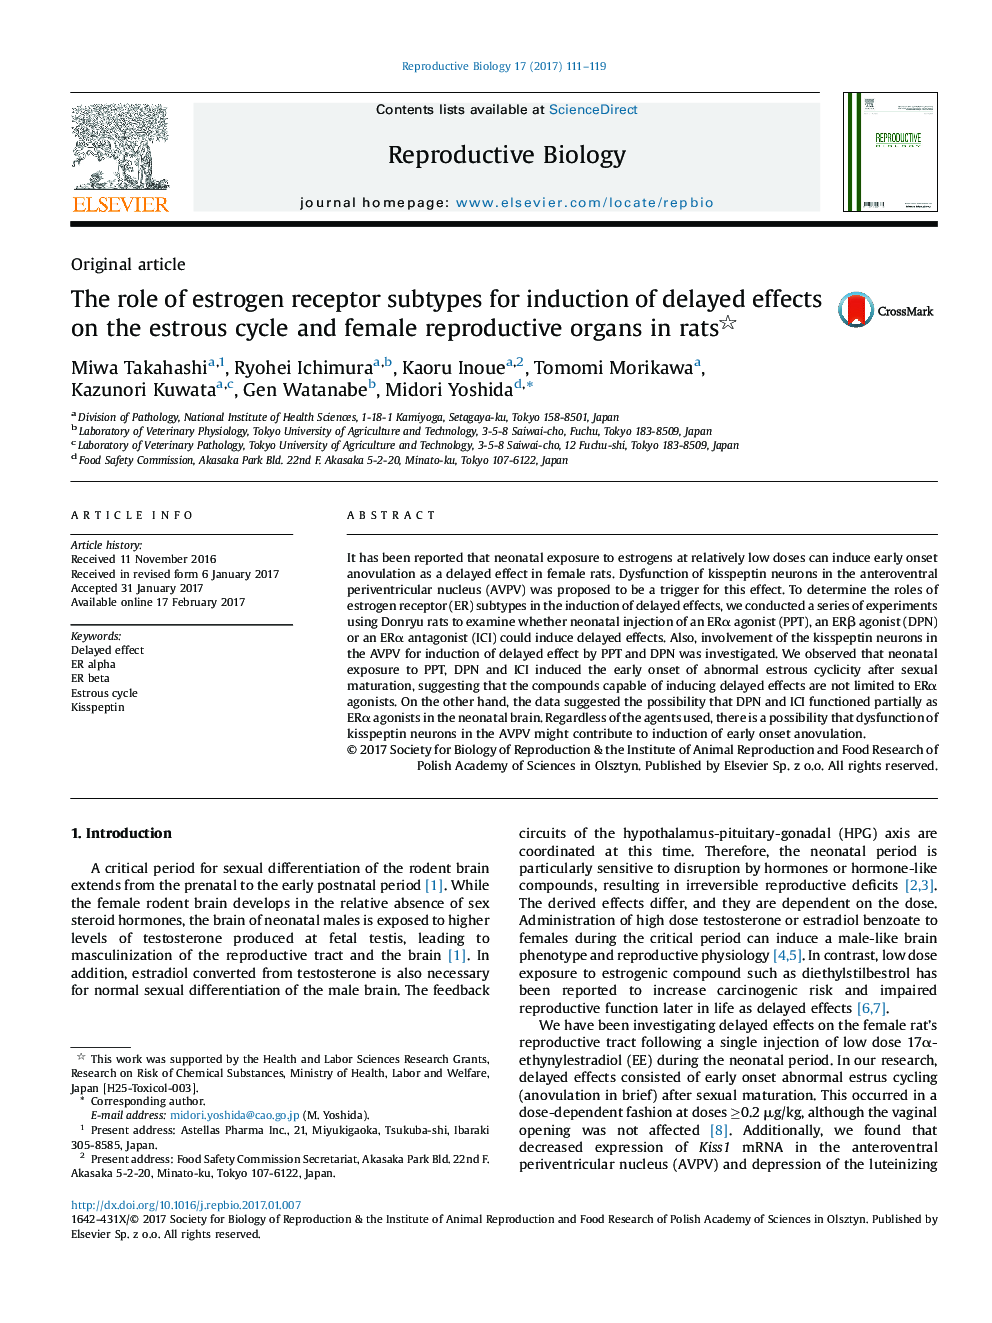 مقاله اصلی نقش انواع زیرپروتئین گیرنده استروژن برای القای اثرات تاخیری بر چرخه استروئید و اندام های تولید مثل در زنان موش صحرایی 